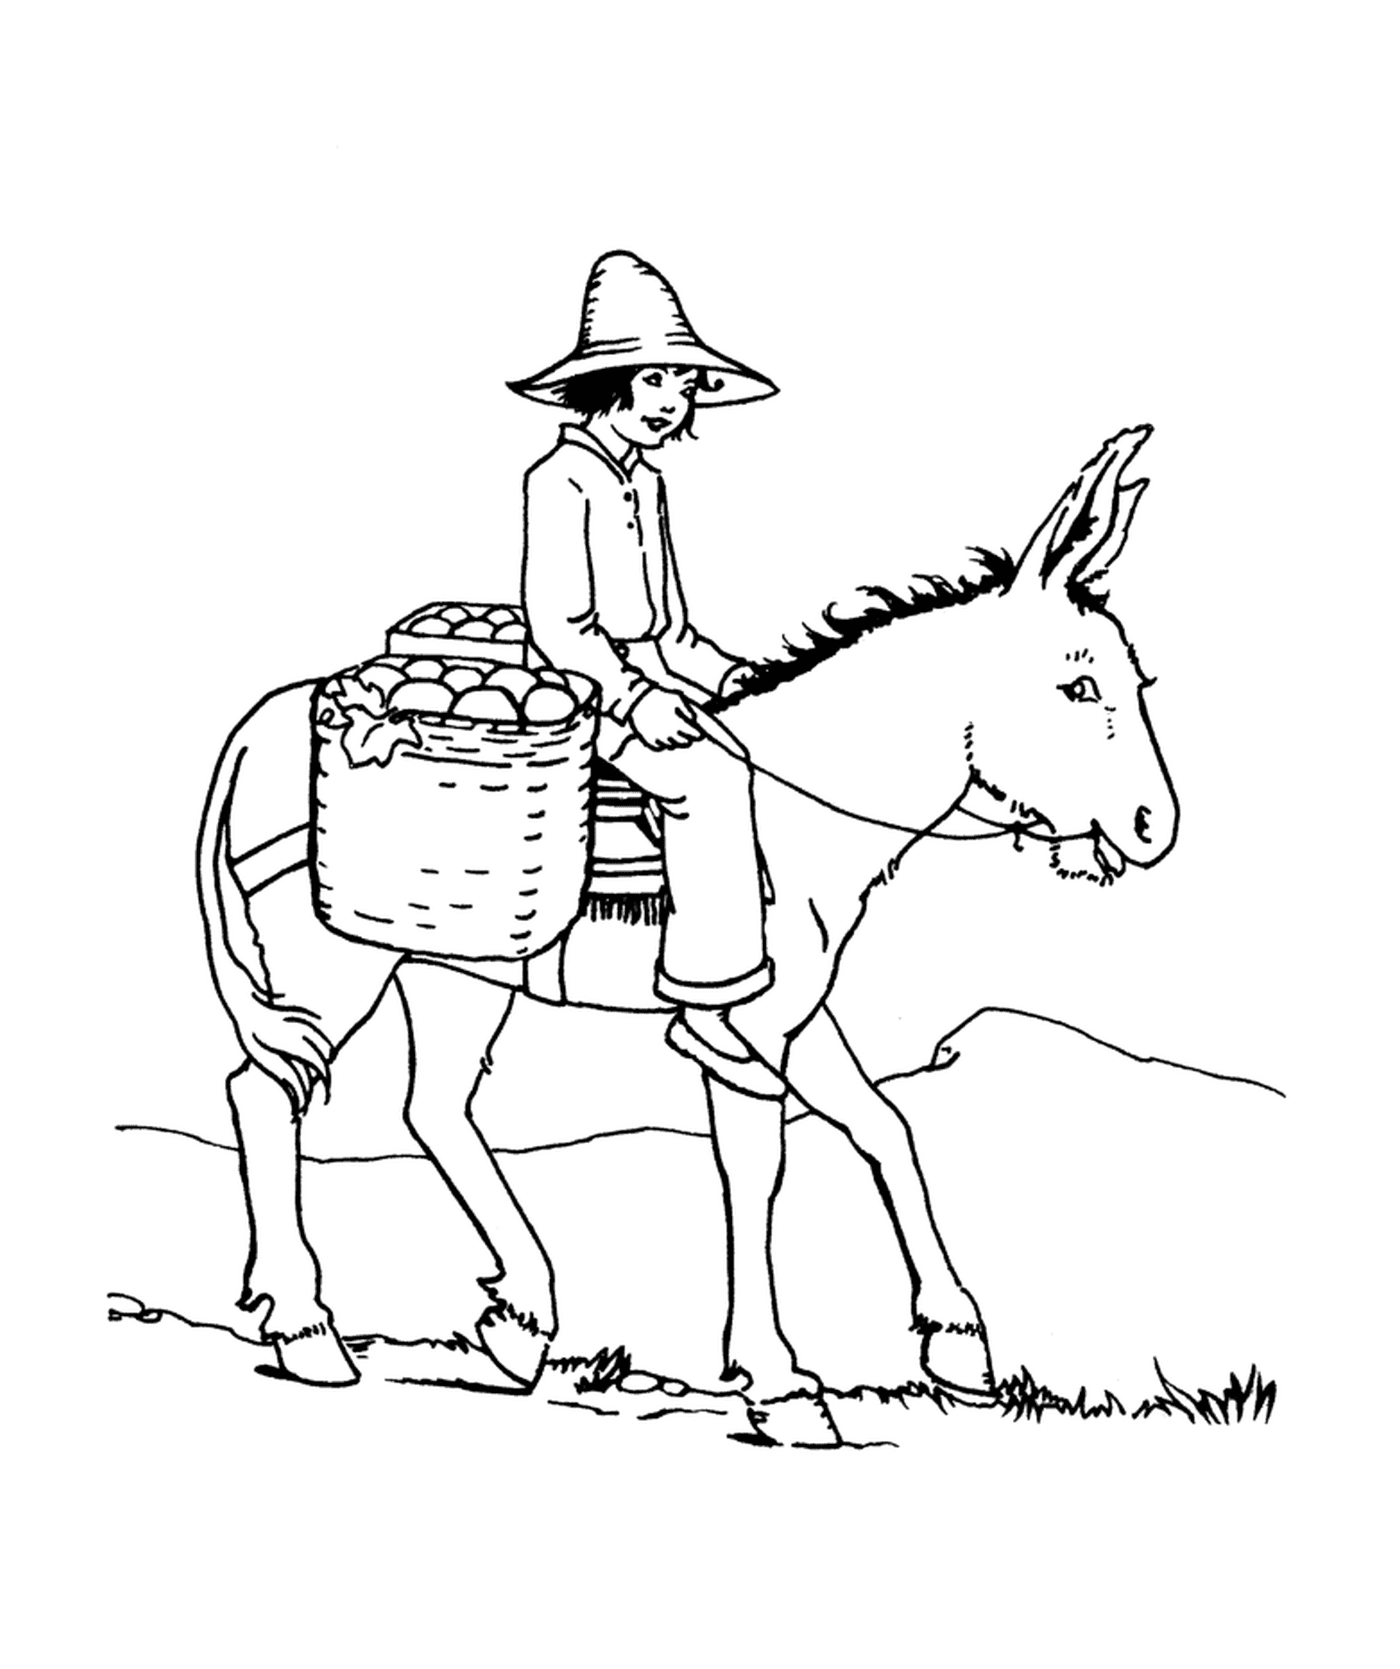  Um homem montando um burro com uma cesta nas costas 